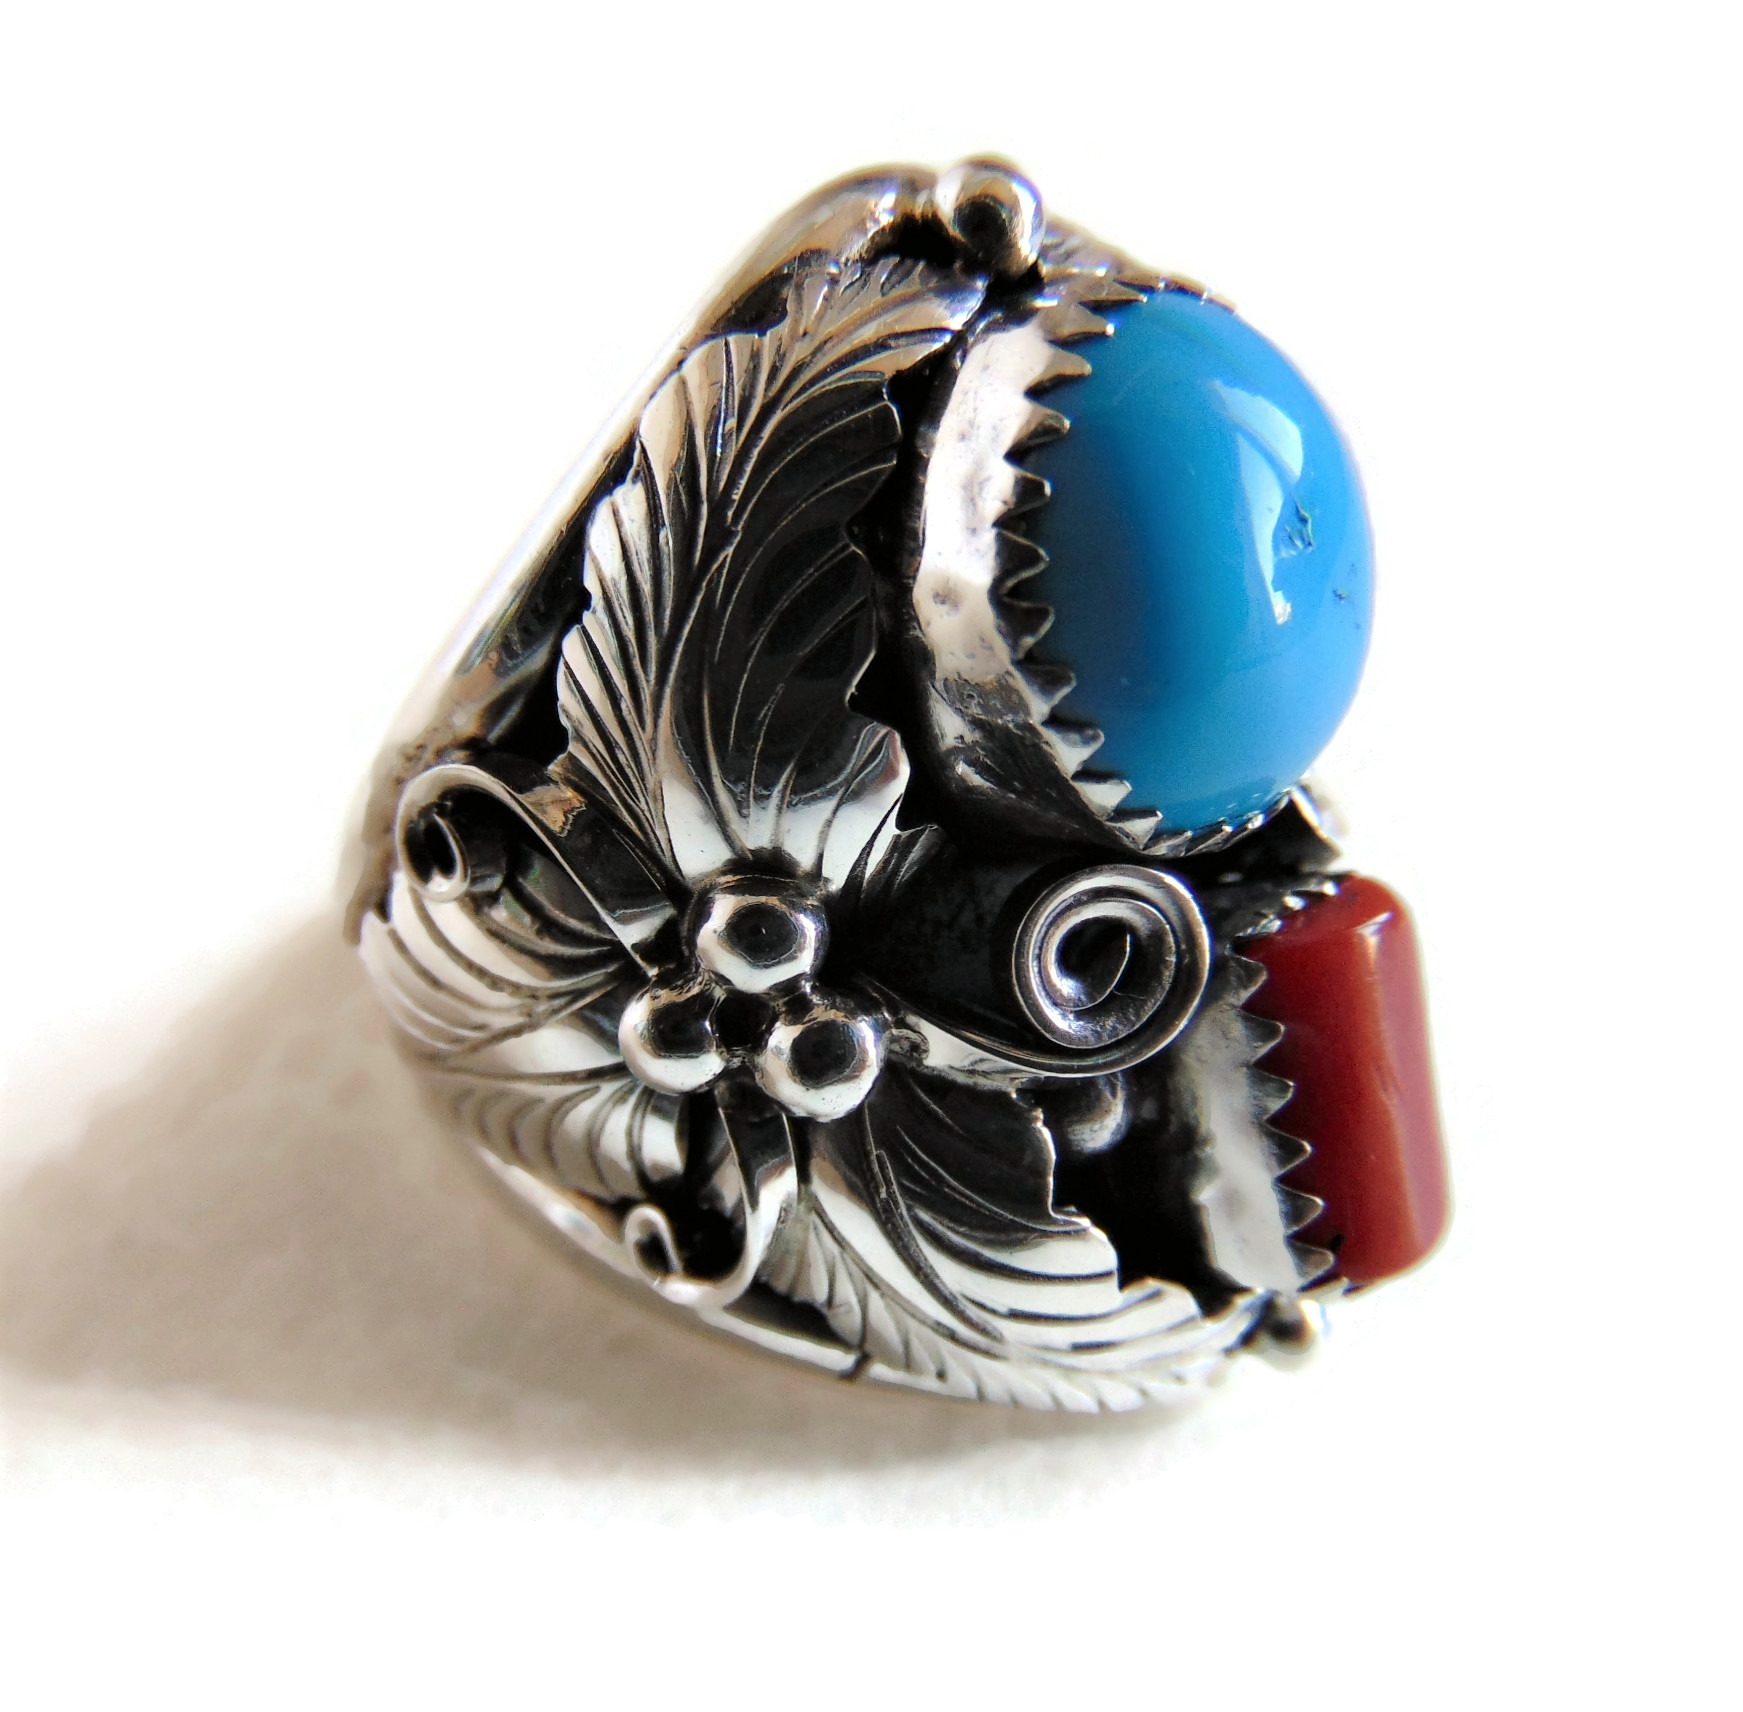 GROTE prachtige NAVAJO zilveren coral turquoise Maat 19 - Ringen - Ssiesvintagesieraden - Zilveren vintage sieraden, Native American, 2e hands sieraden